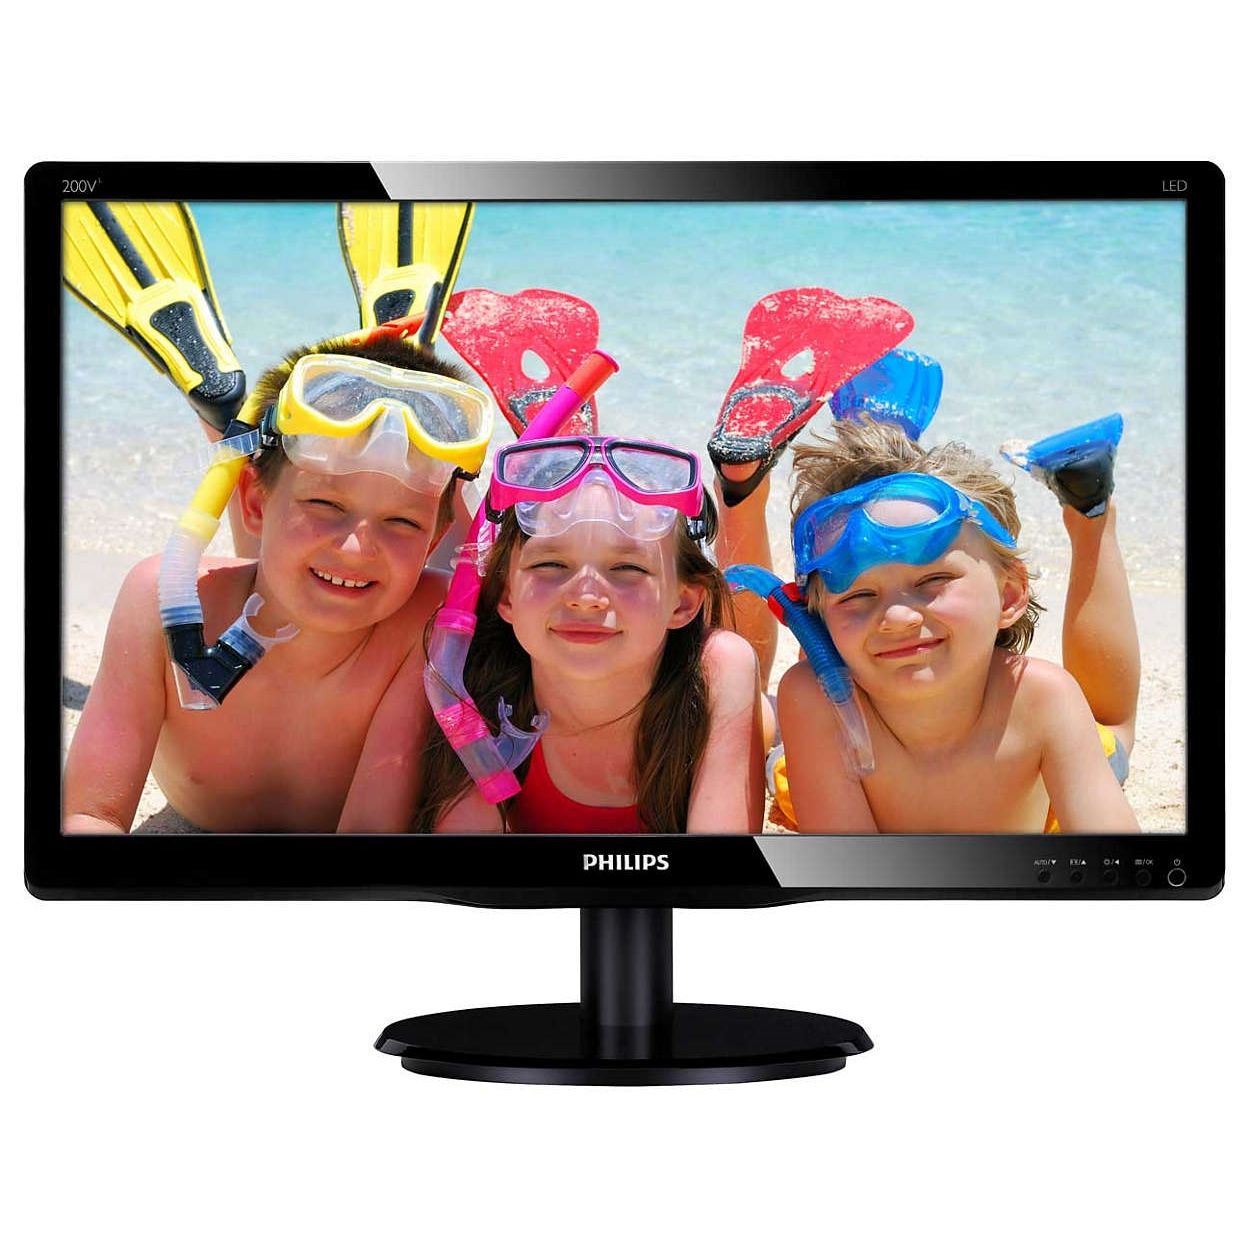  Monitor LED Philips 200V4QSBR/00, 20", Full HD, Negru 